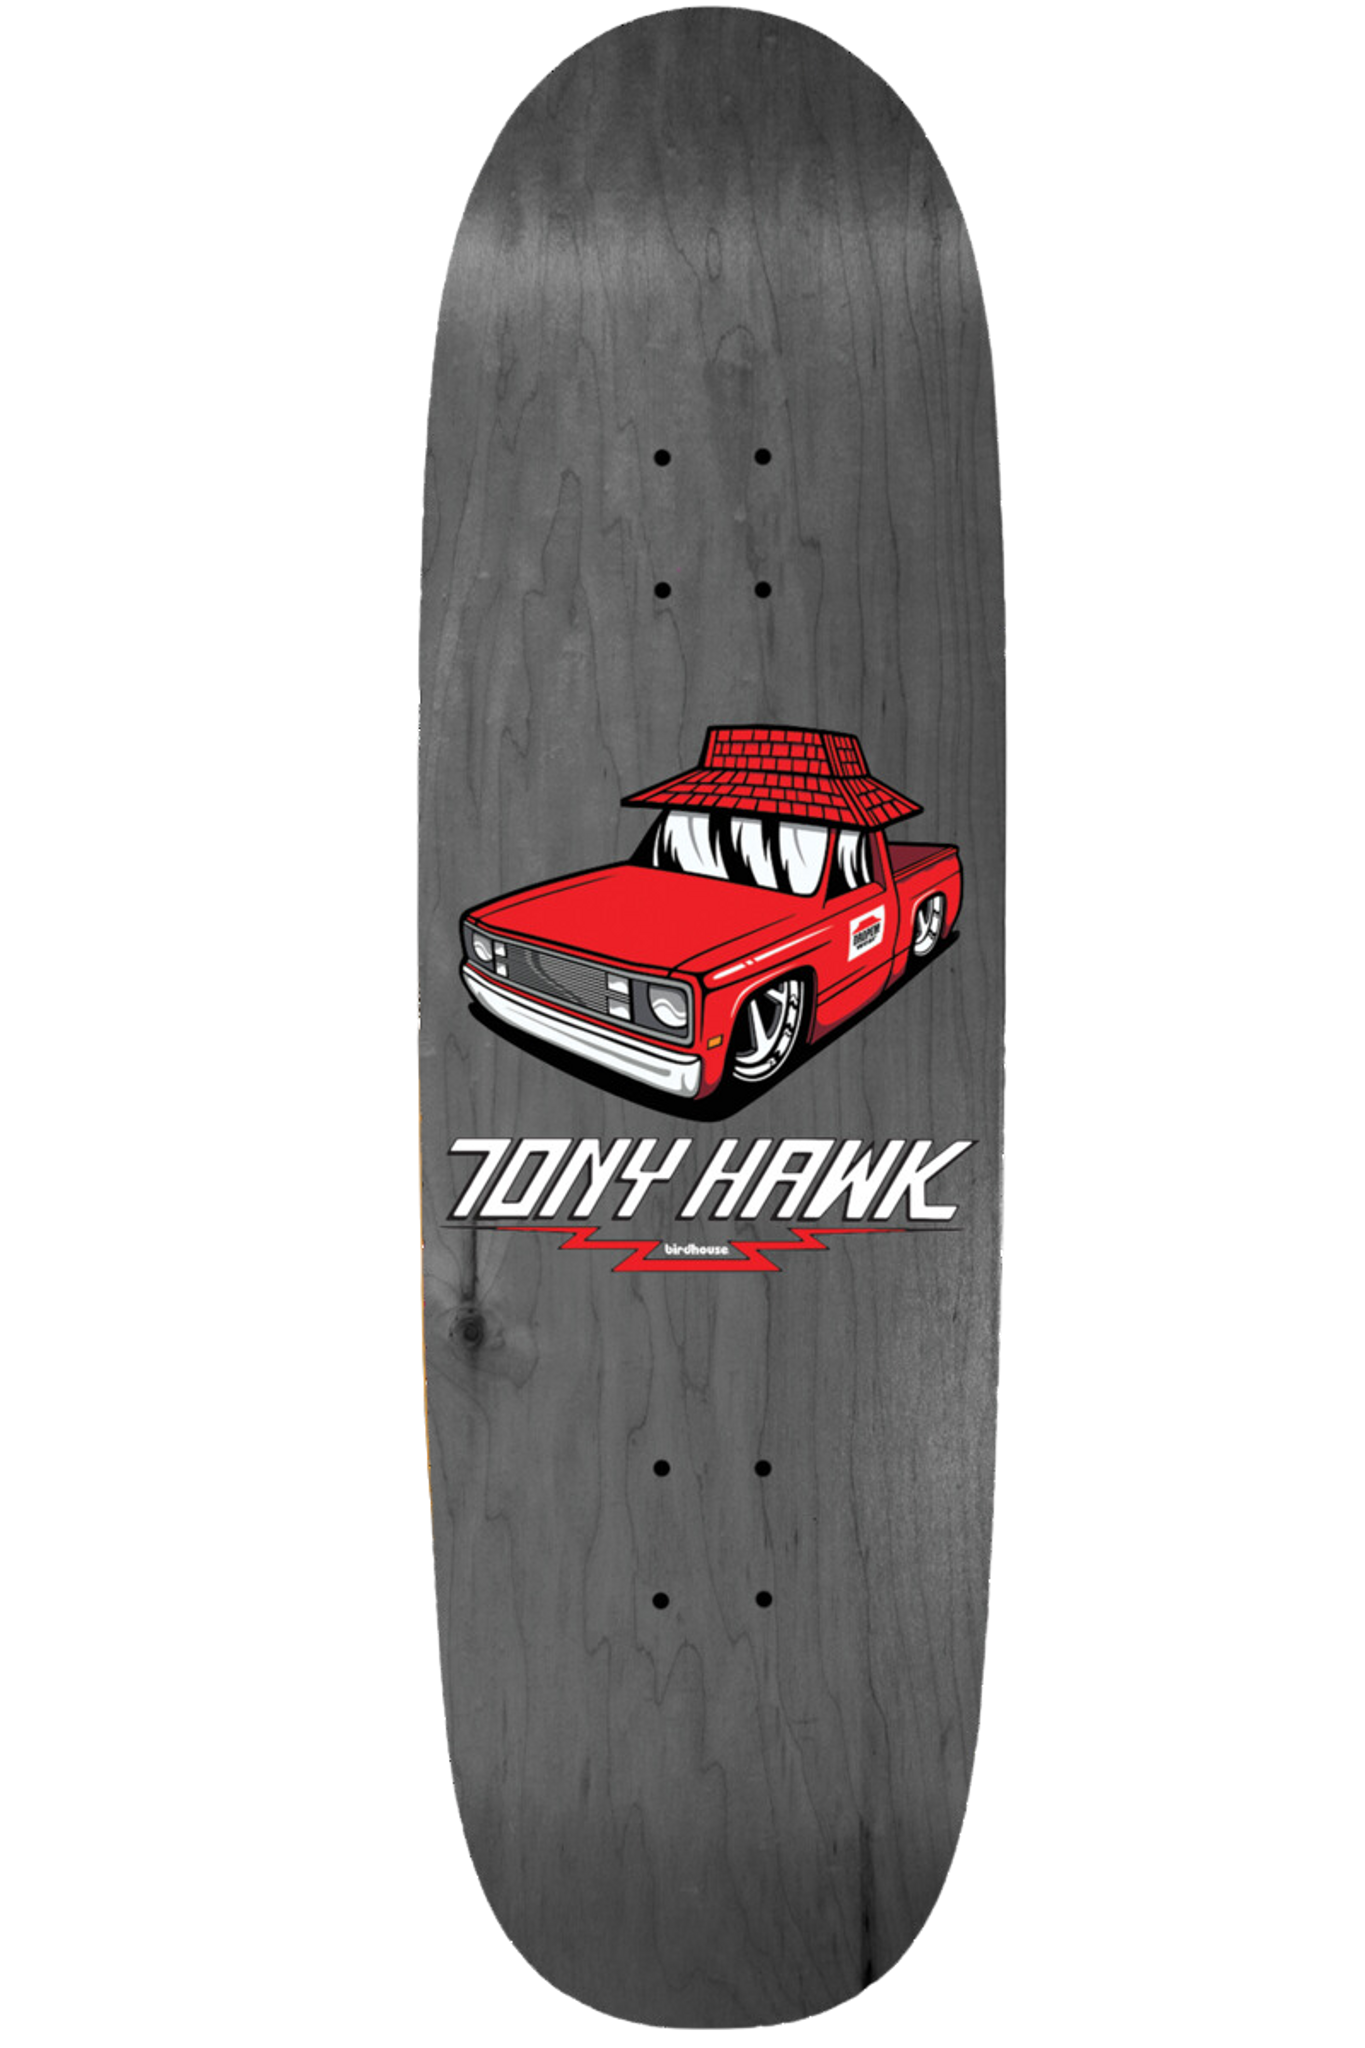 Tænk fremad flaske aflange Birdhouse Tony Hawk Hut Skateboard Deck